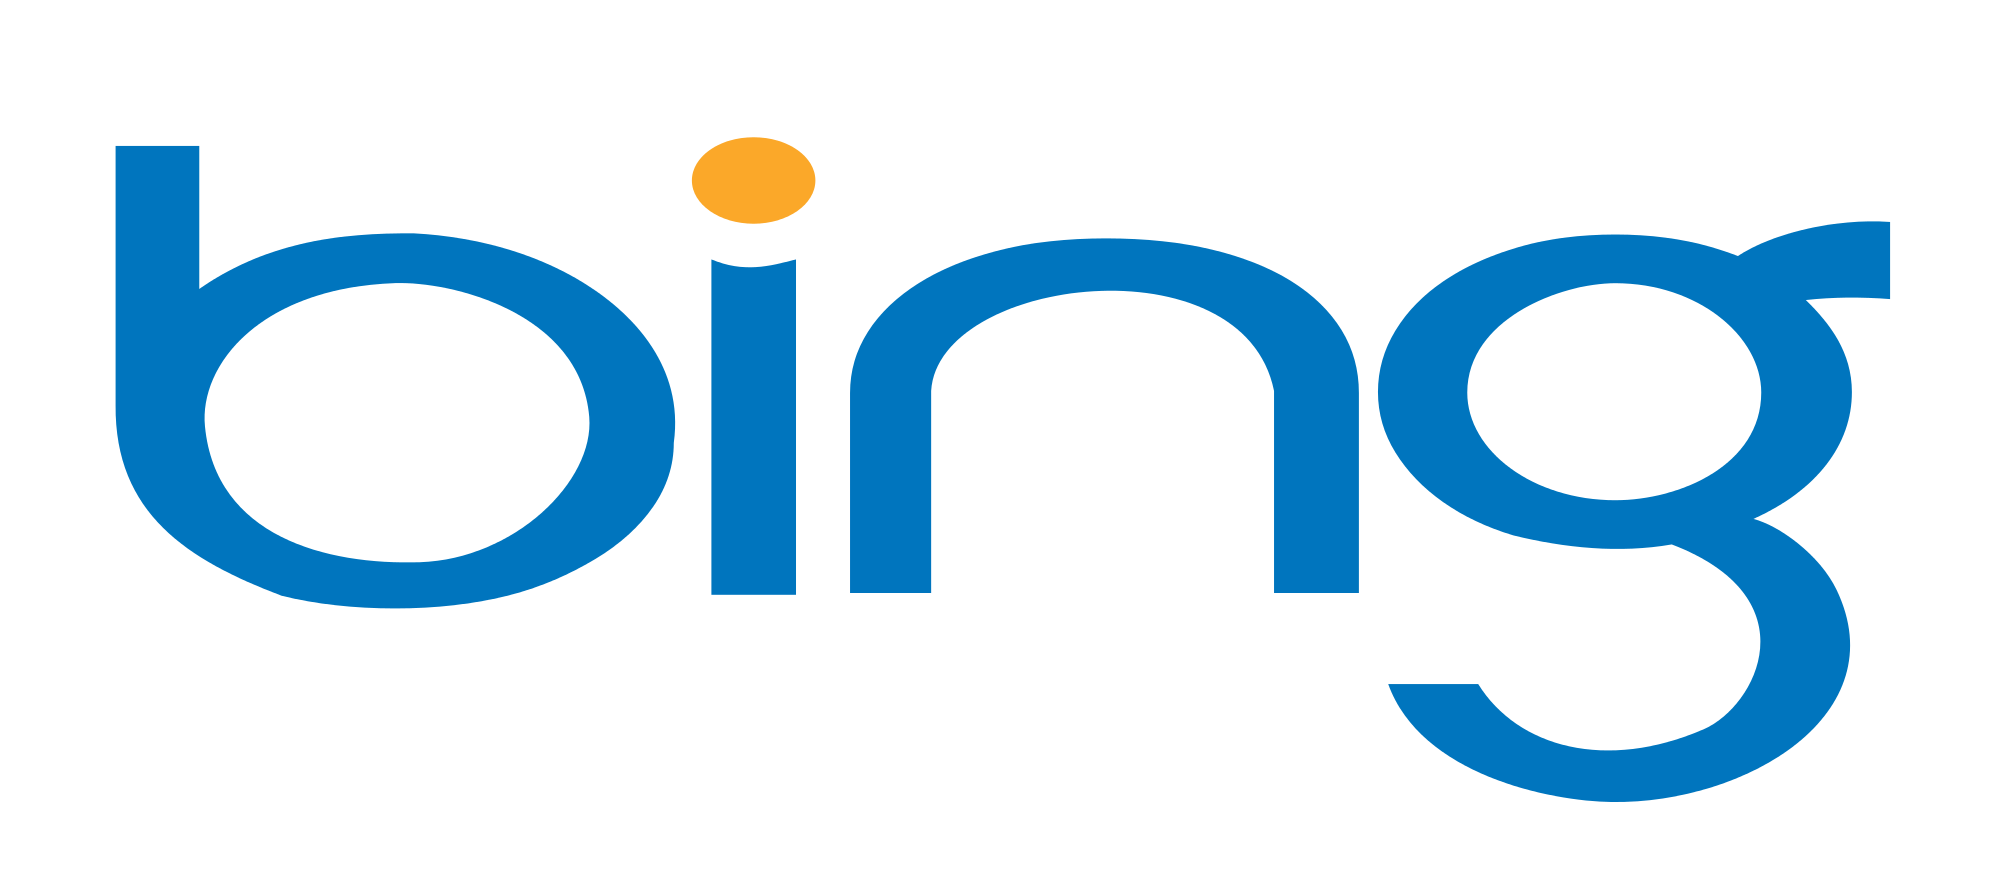 Продвижение сайтов: Bing становится конкурентом Google?